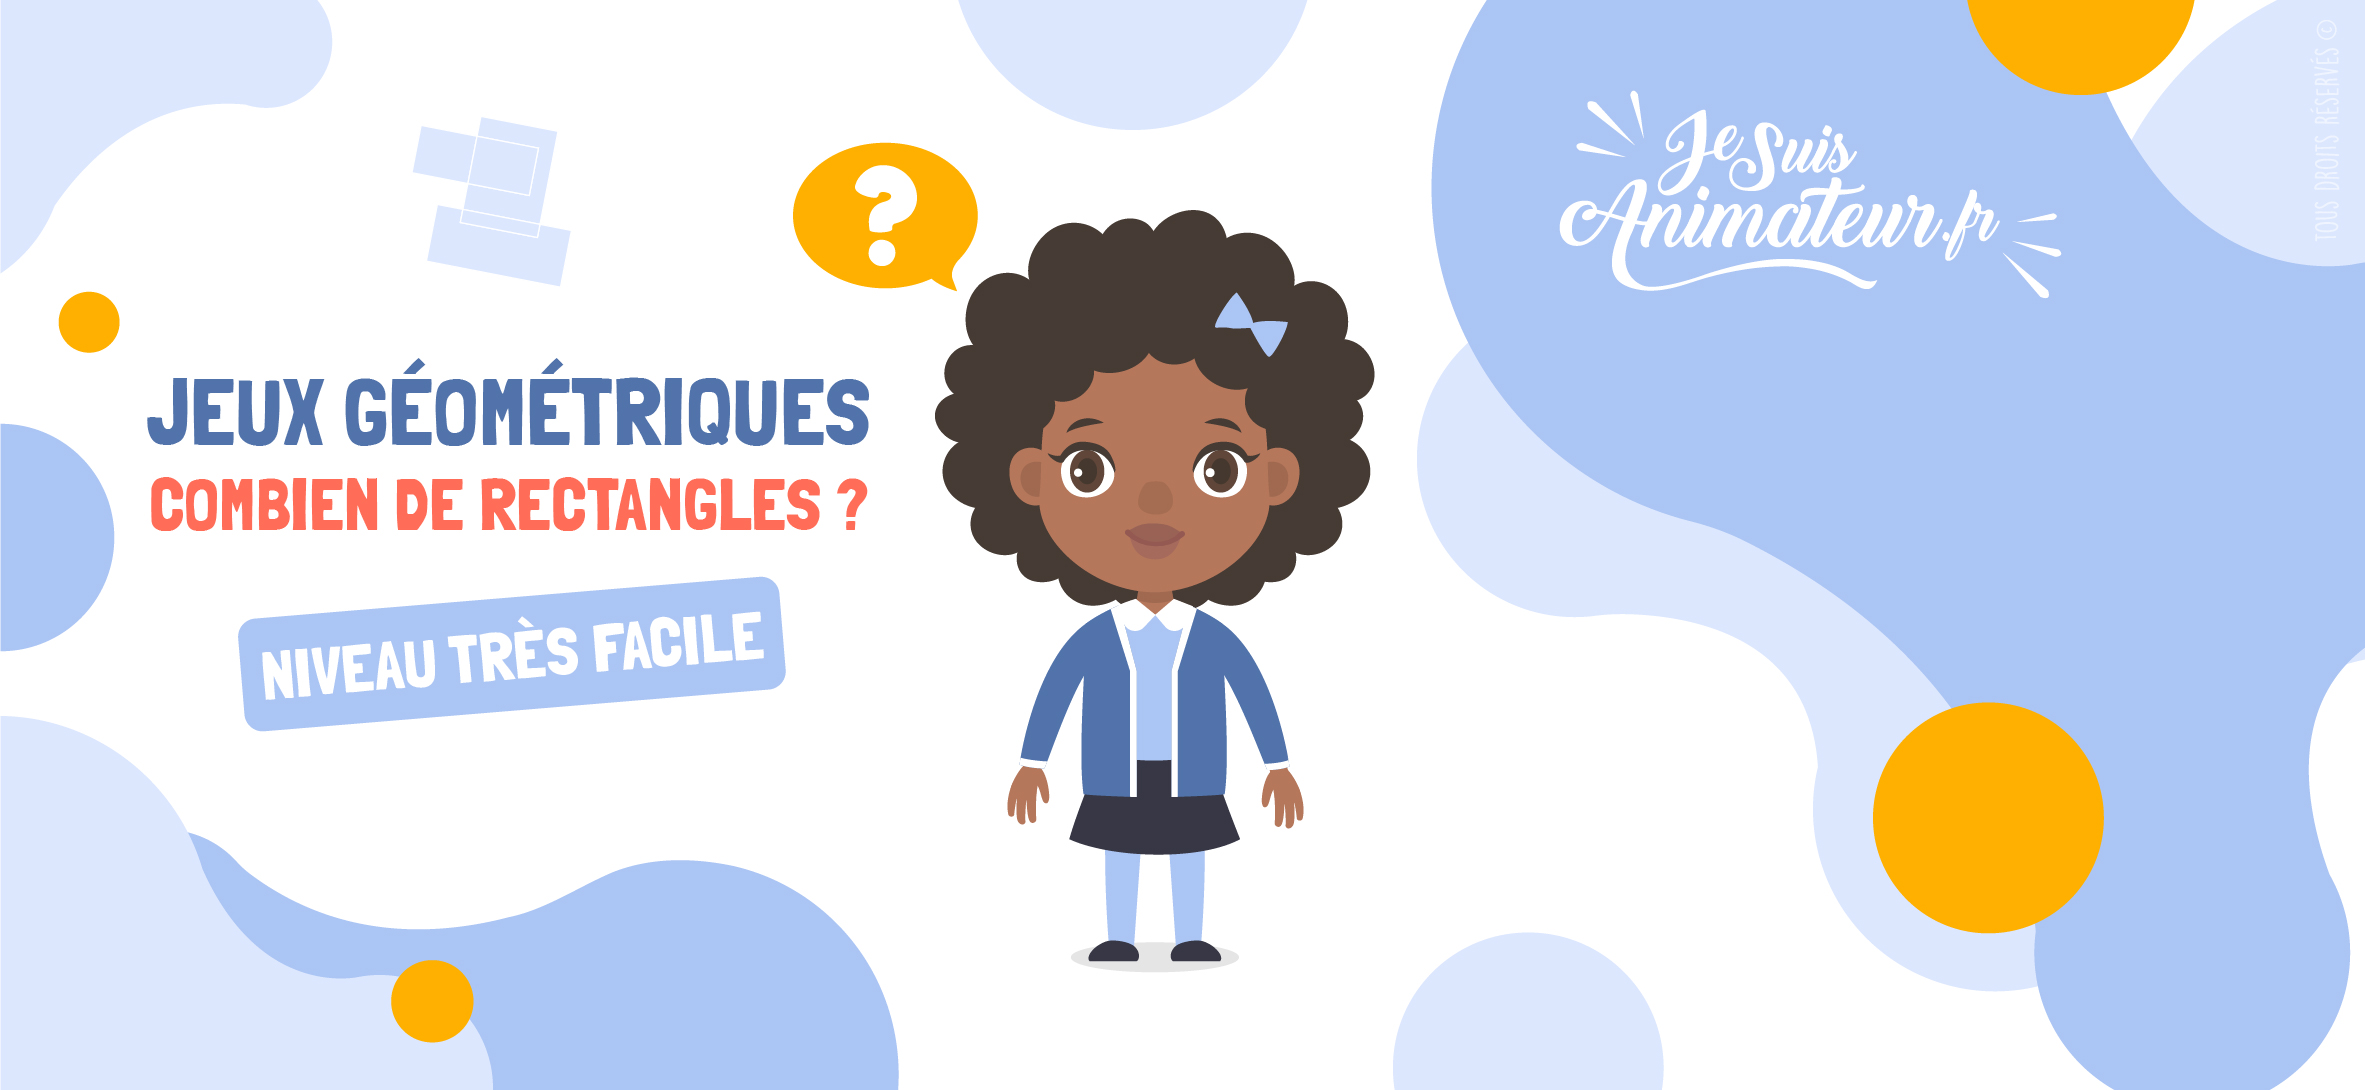 Combien de rectangles comptez-vous dans ces figures ? (niveau très facile) | JeSuisAnimateur.fr